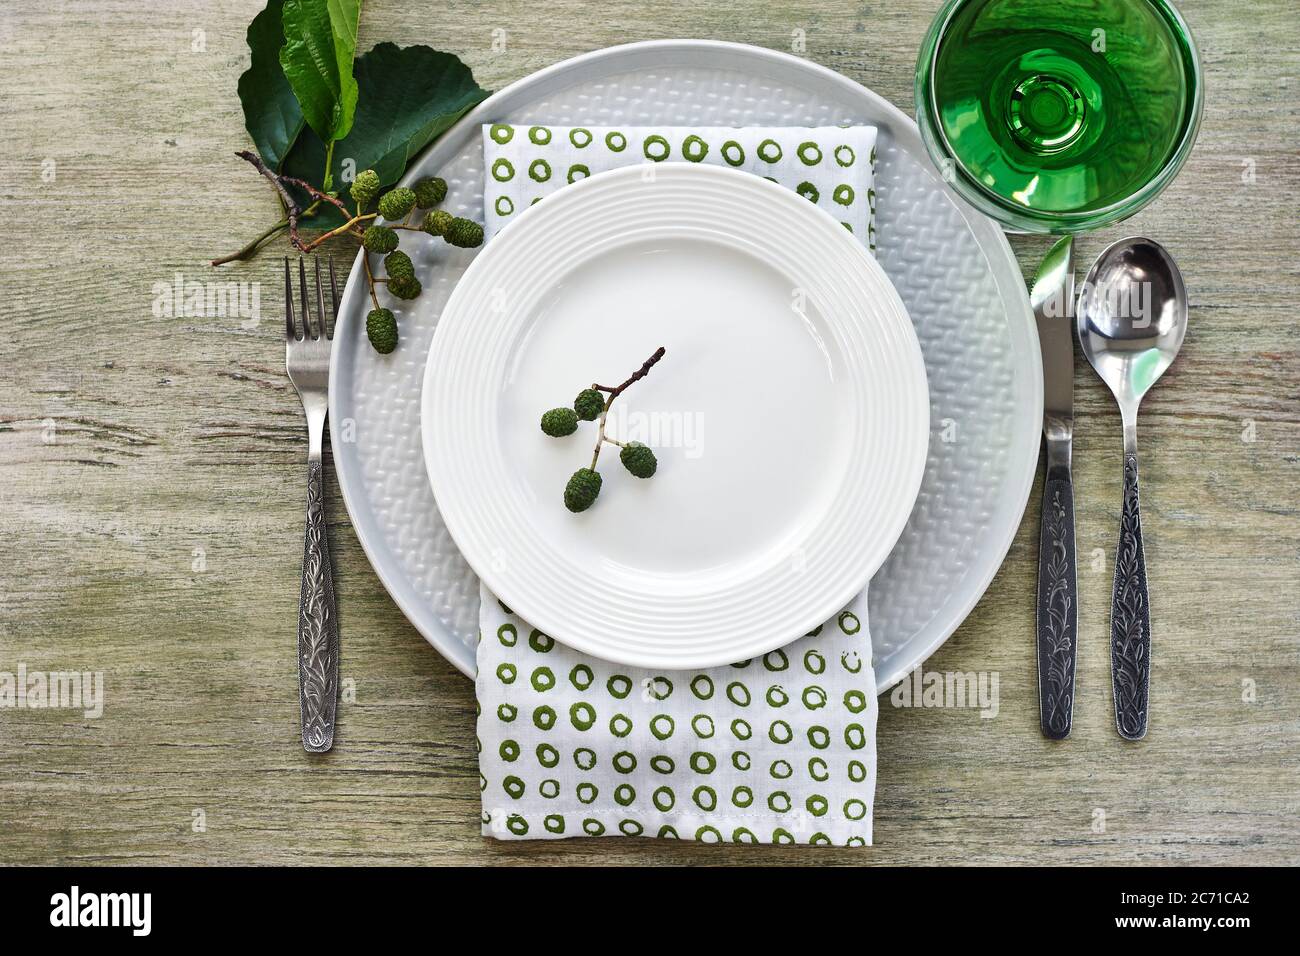 Sommertisch in Grüntönen. Teller, Besteck, Serviette und Erle Zweig. Stockfoto